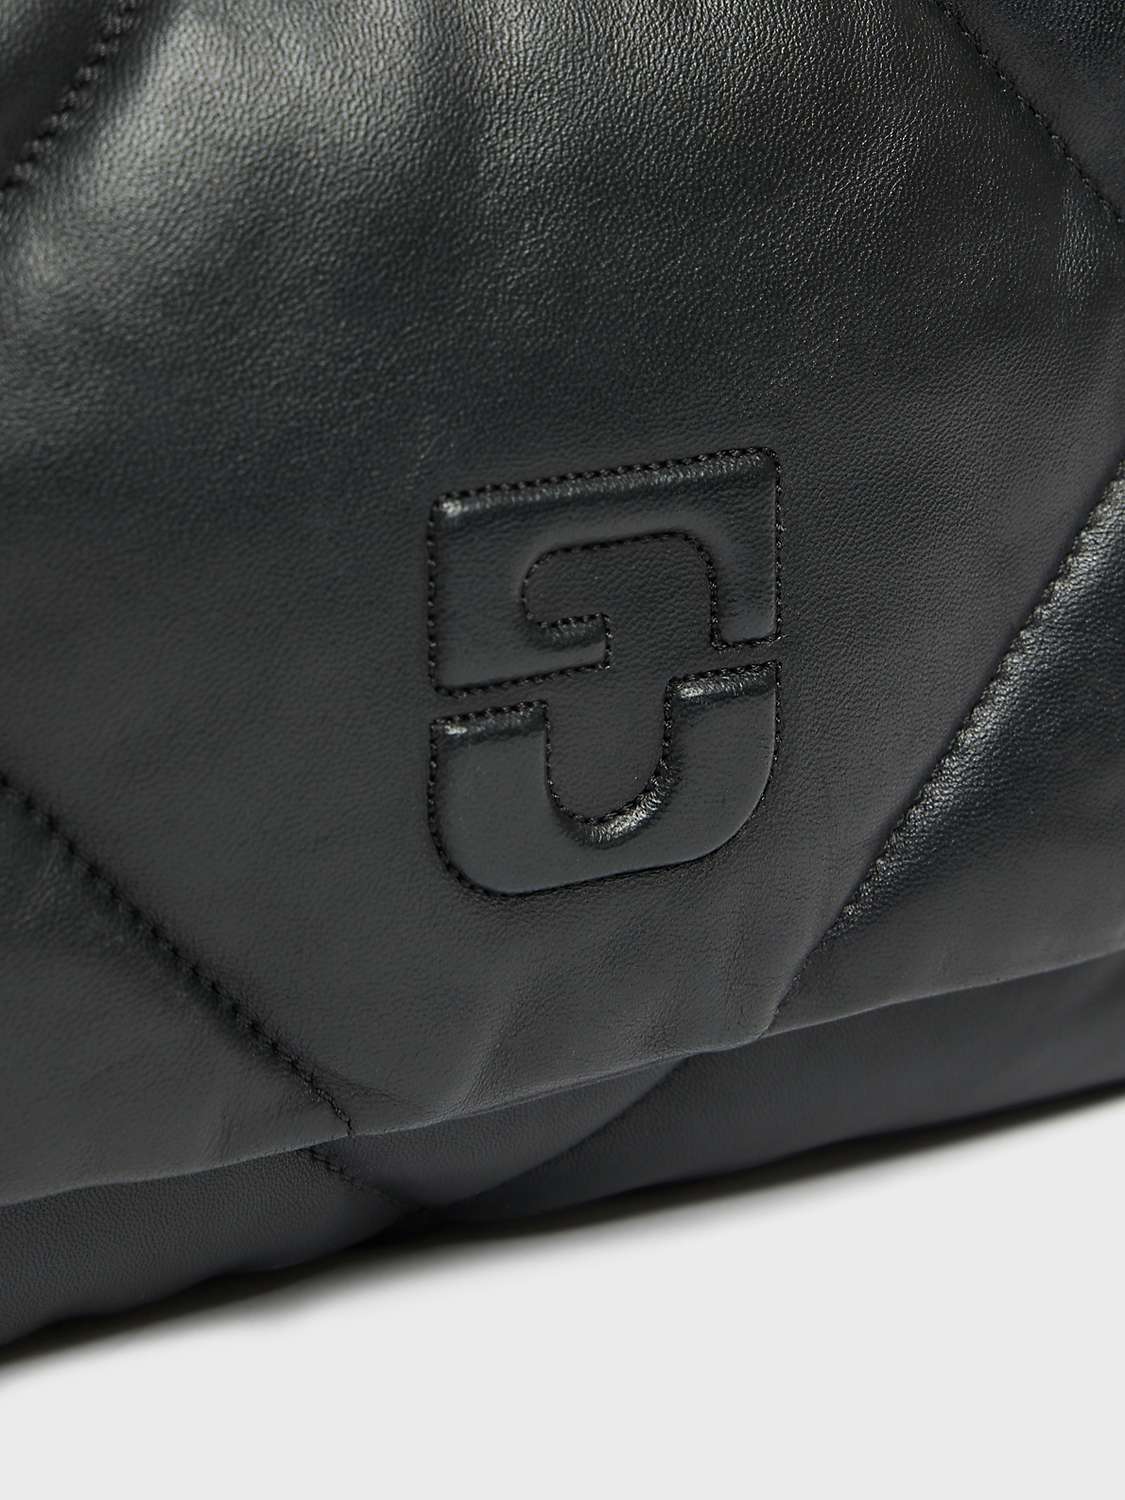 Buy Gerard Darel Le Fanny Leather Shoulder Bag Online at johnlewis.com